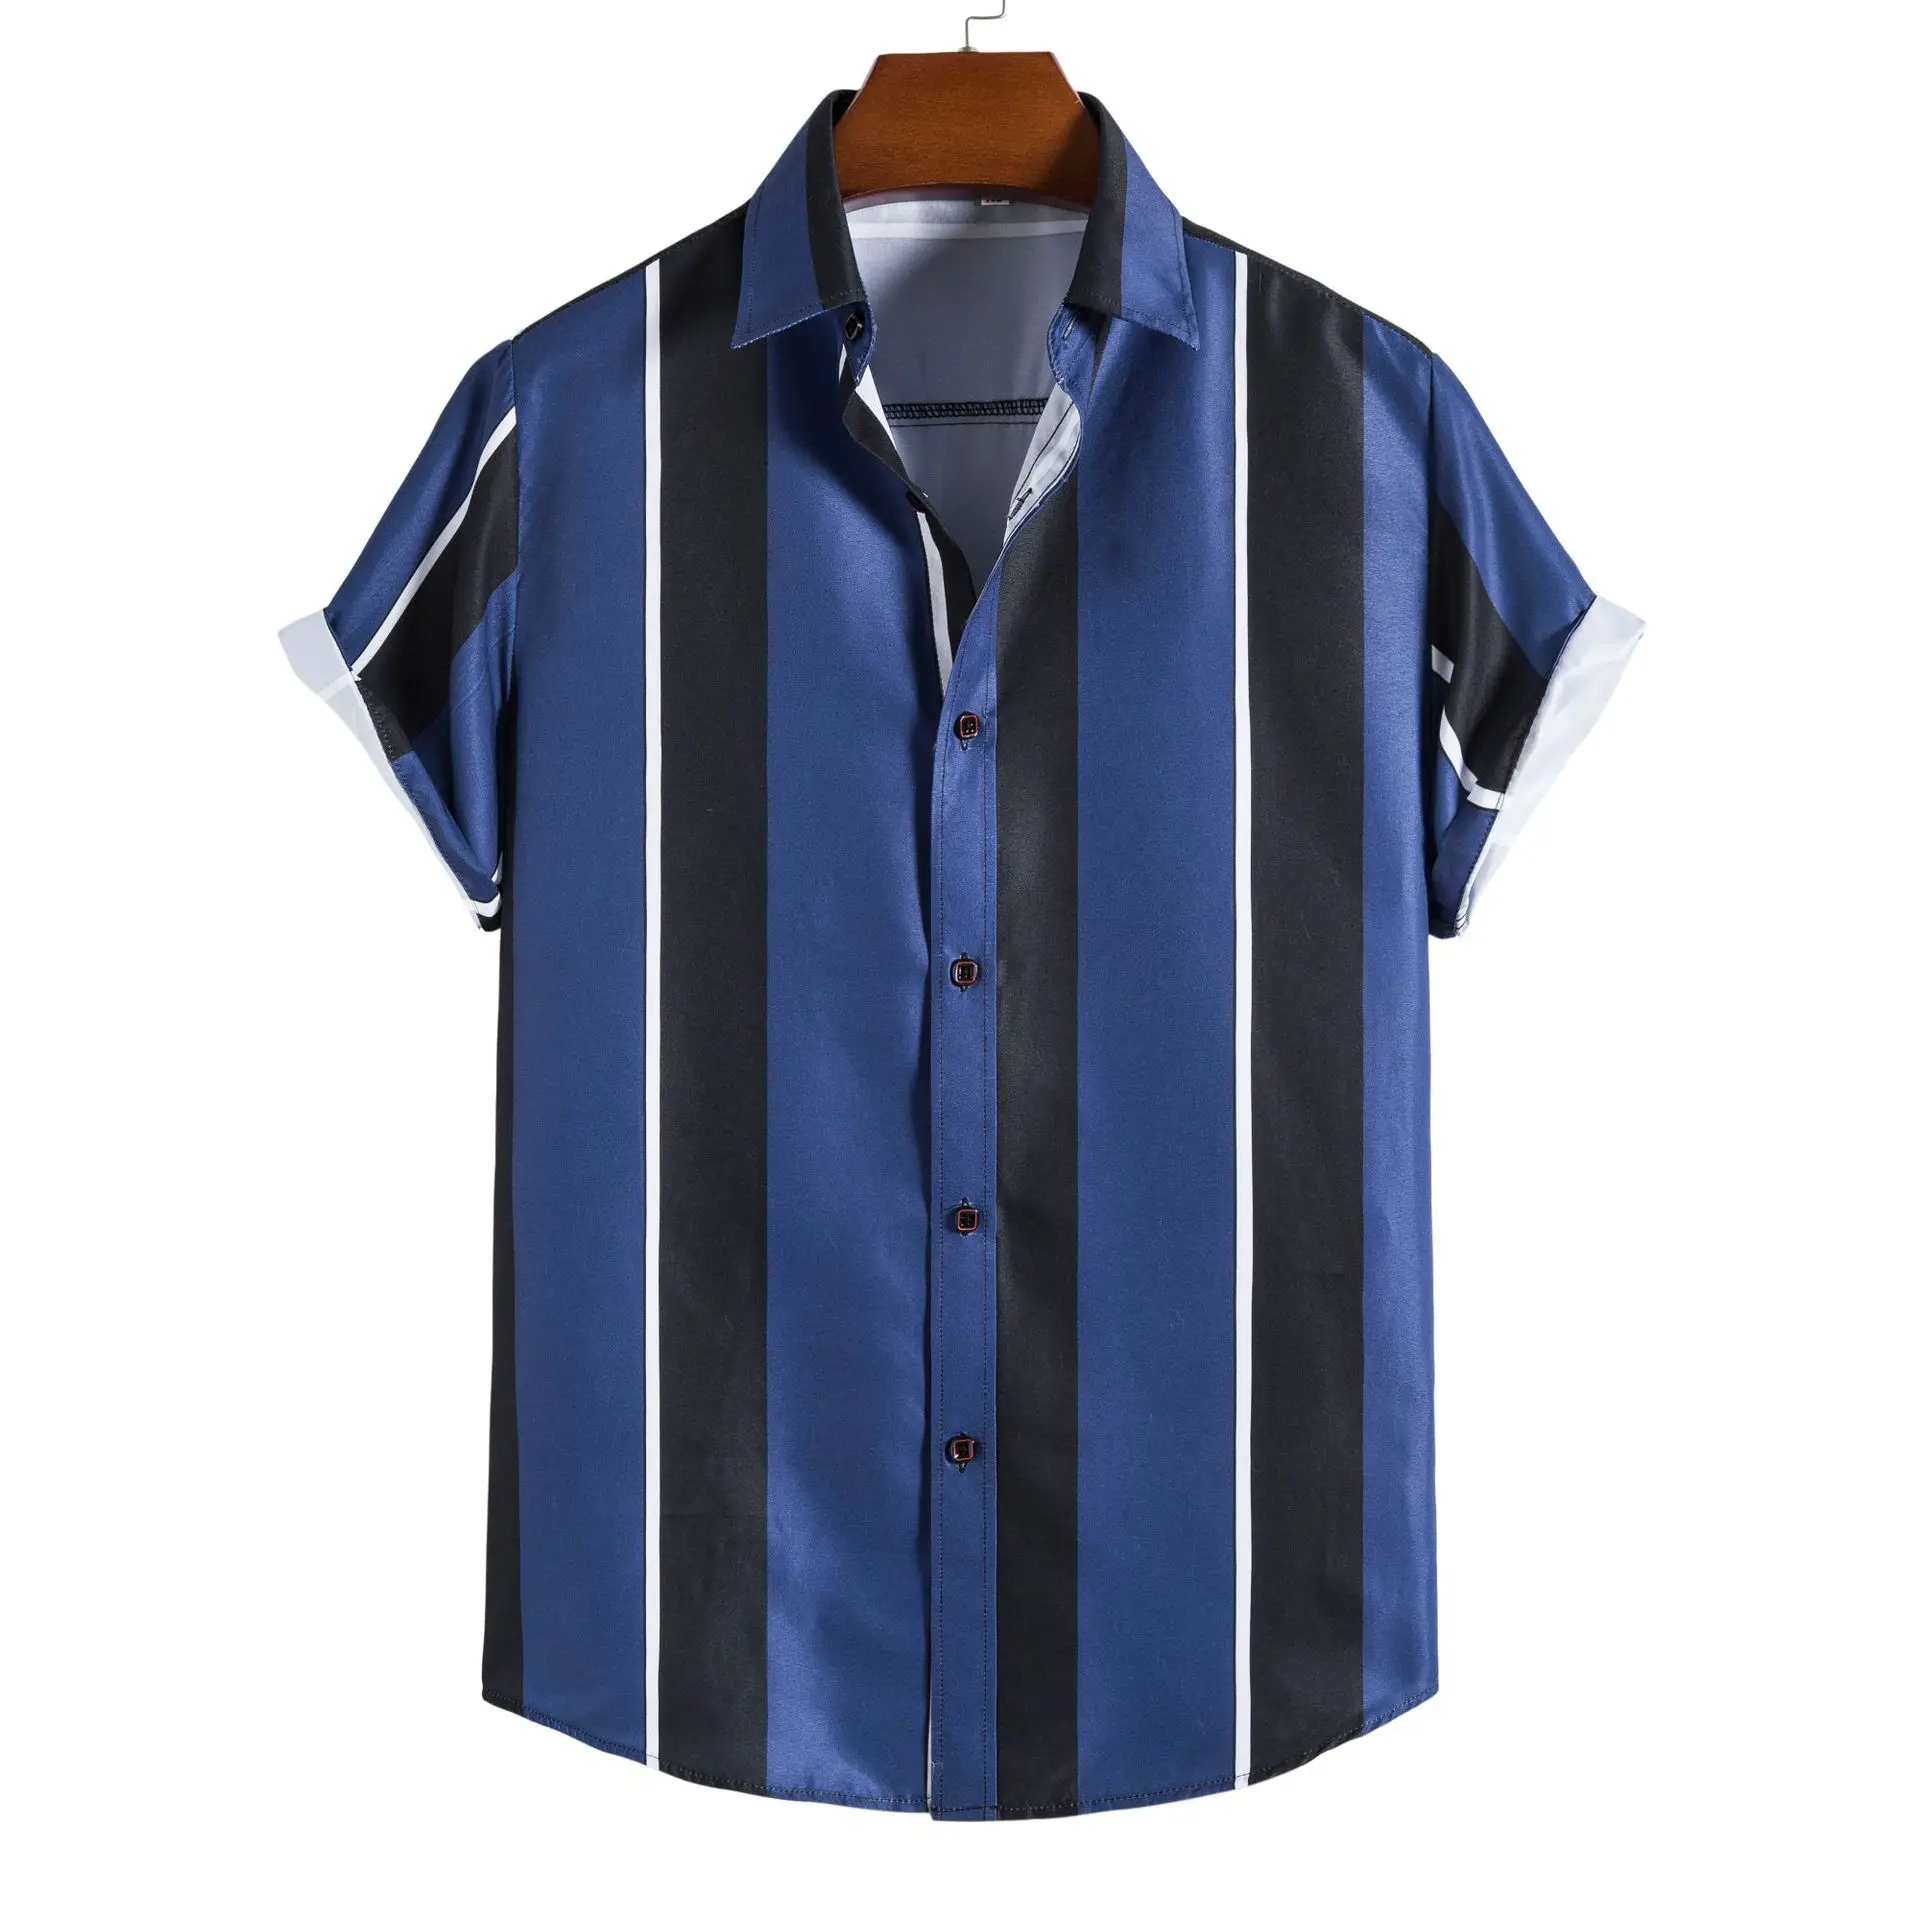  ZDFER - Camisas de vestir para hombre, con estampado de rayas,  casual, solapa, un solo botonado, playa, vacaciones, al aire libre, camisa